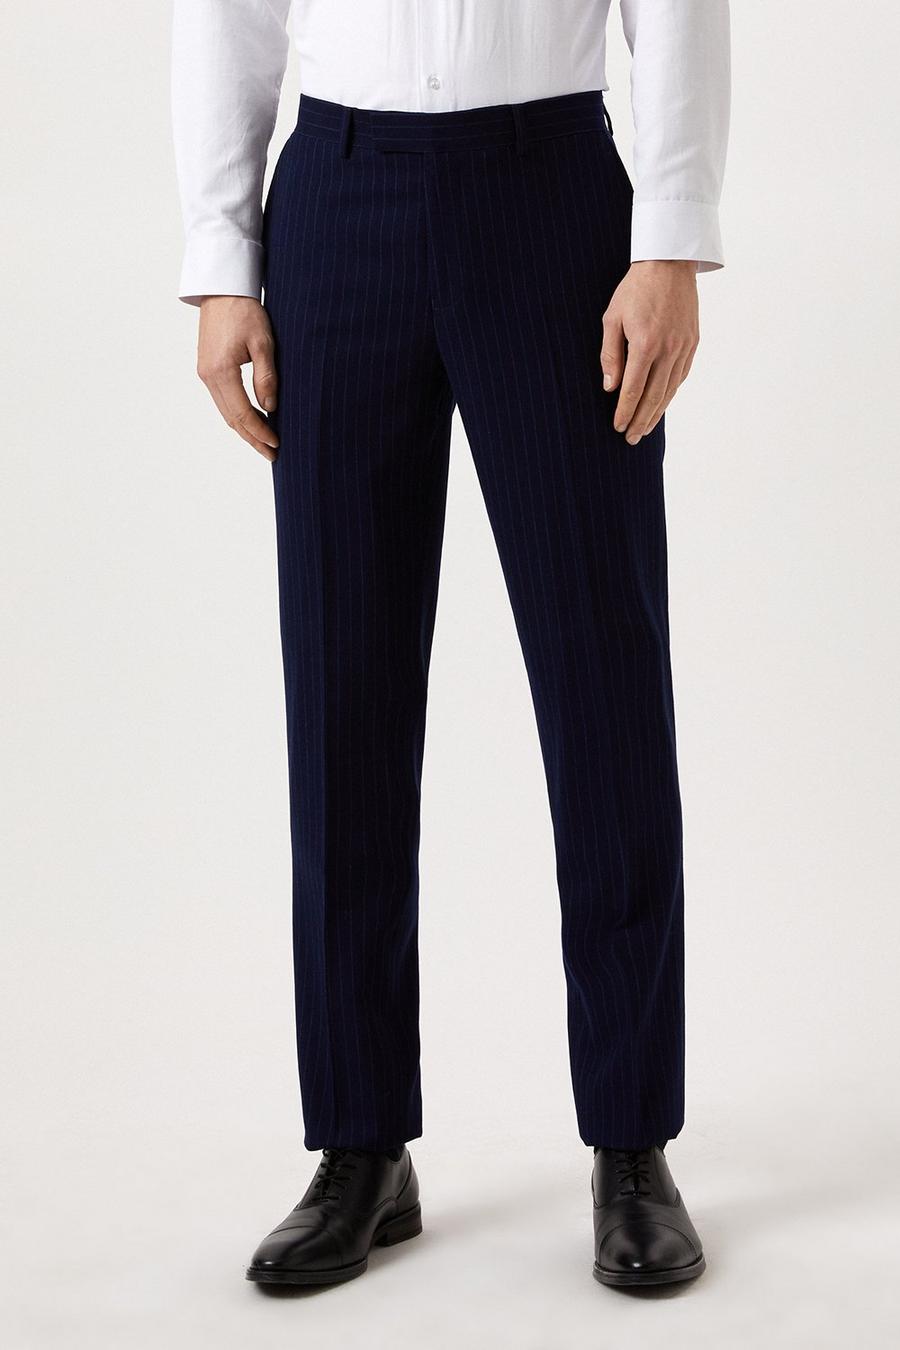 Harry Brown Slim Fit Navy Pinstripe Suit Trouser